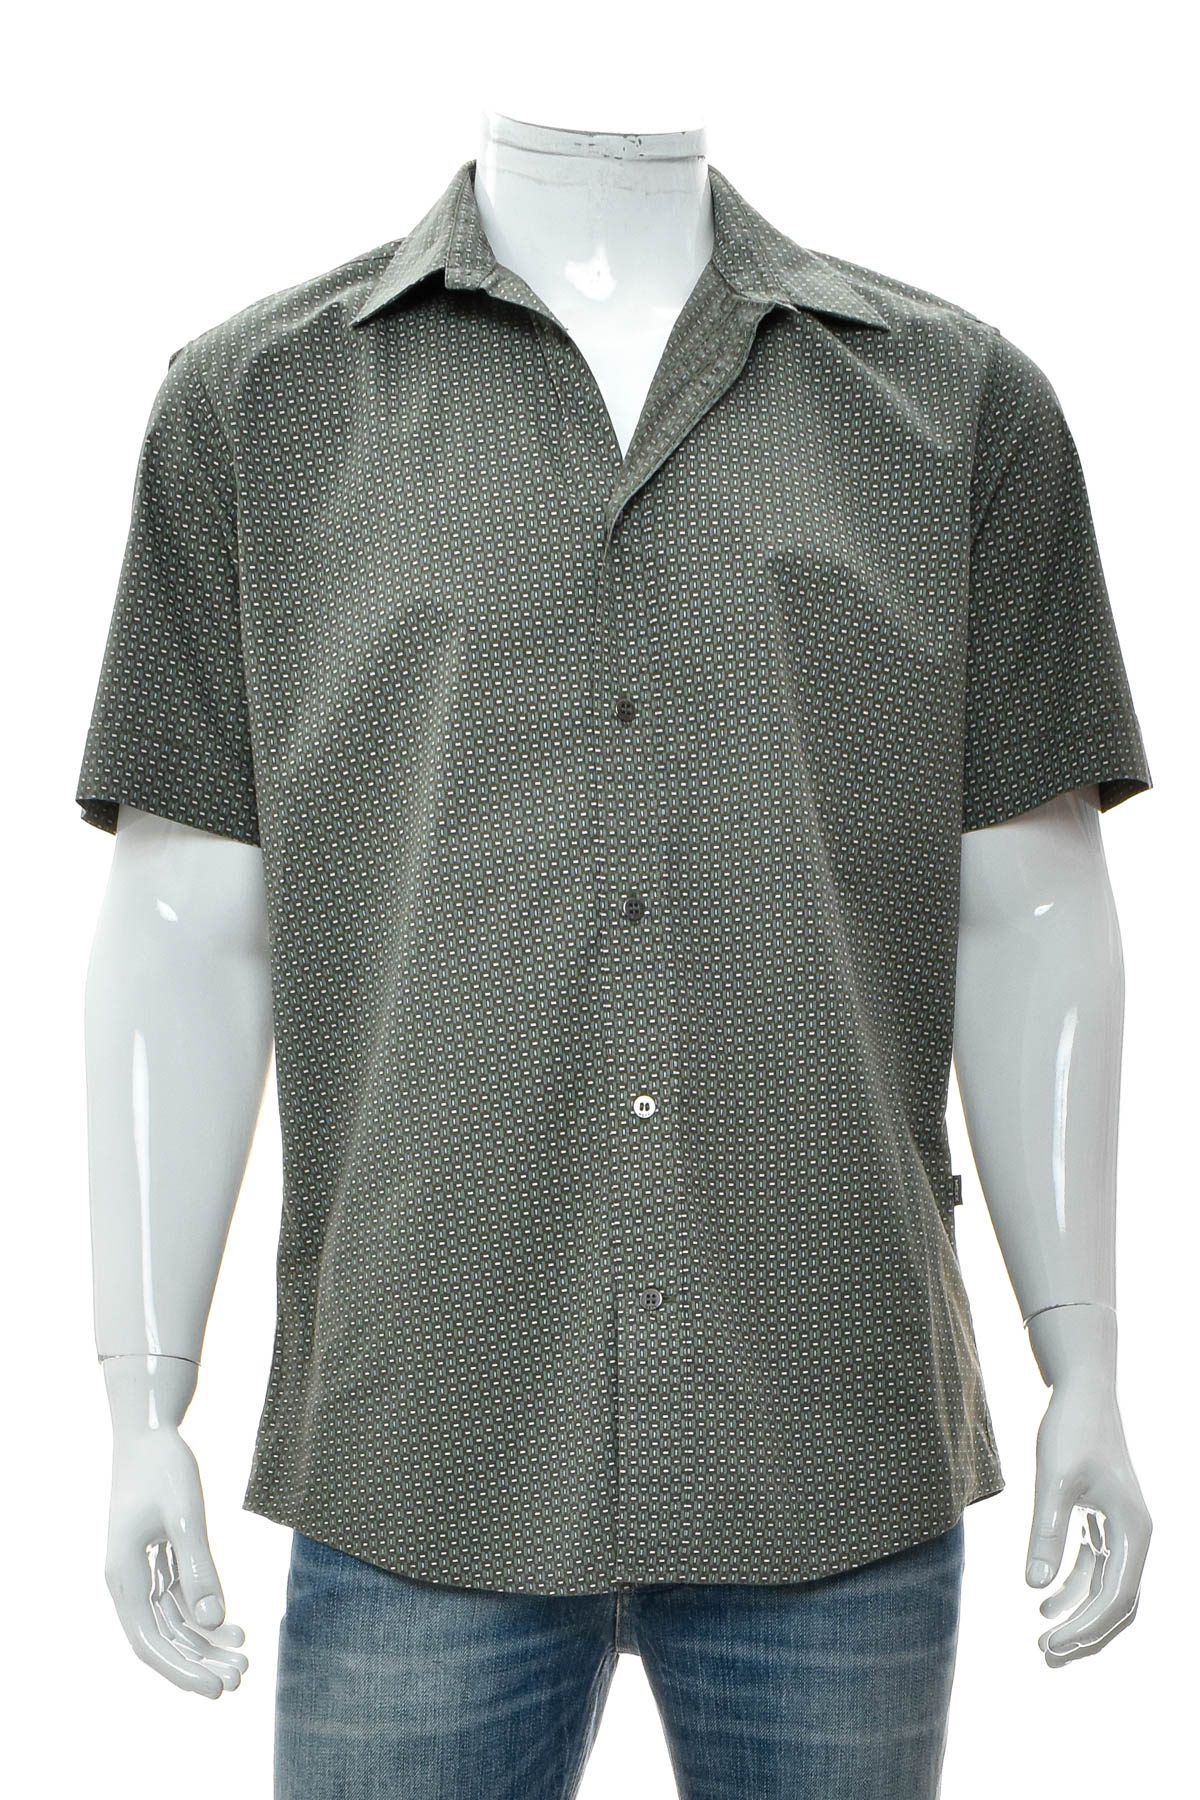 Ανδρικό πουκάμισο - MEXX - 0